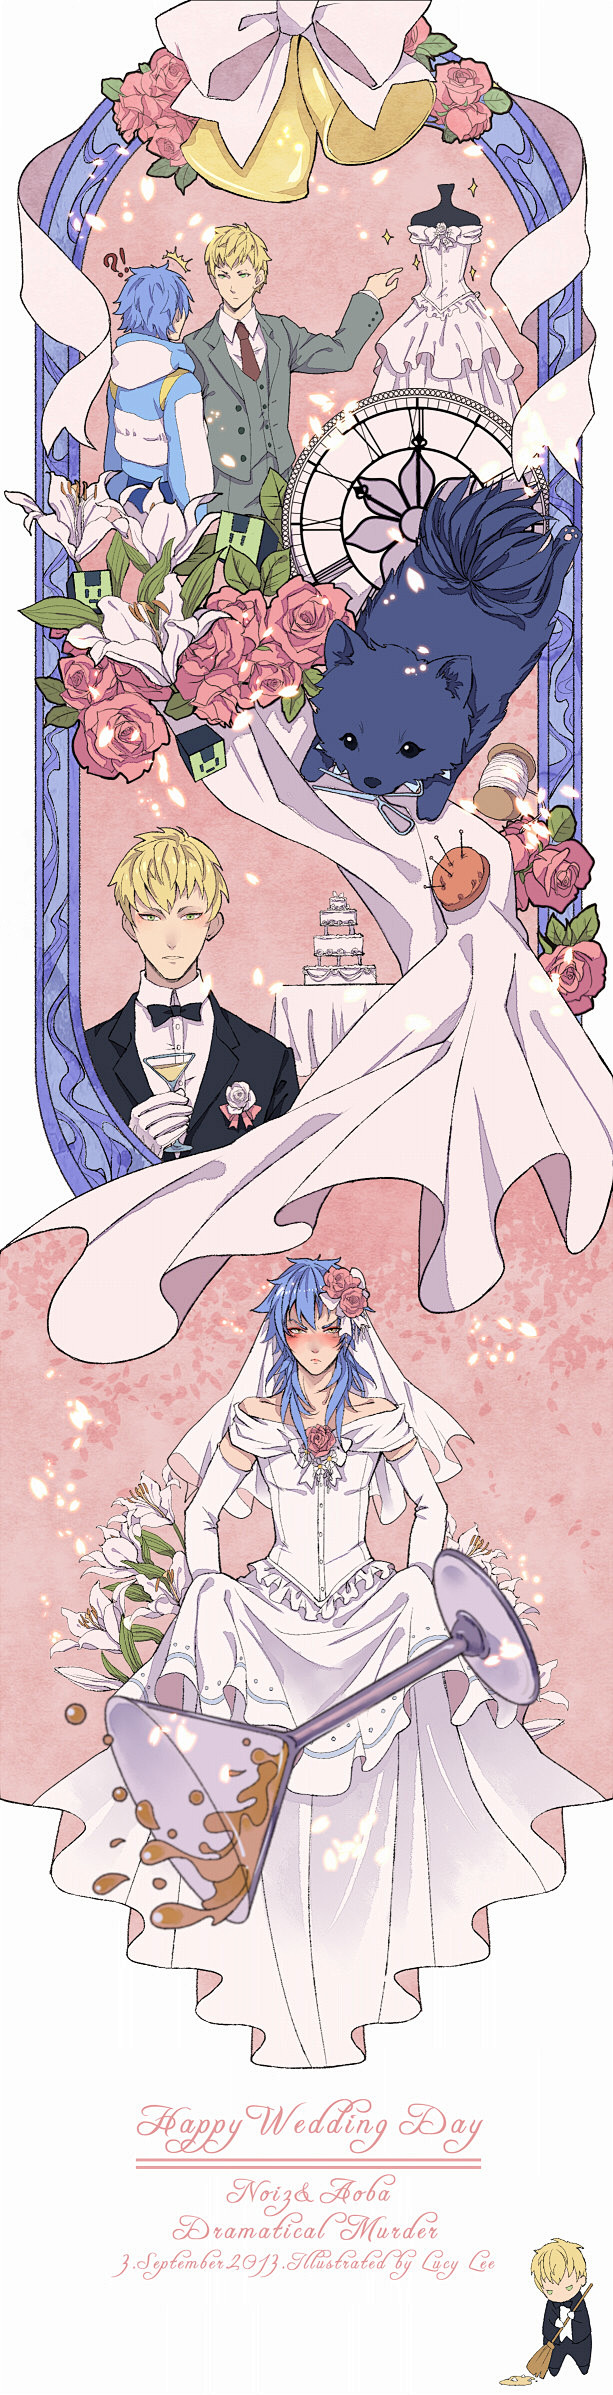 【DMMD】Weddingday